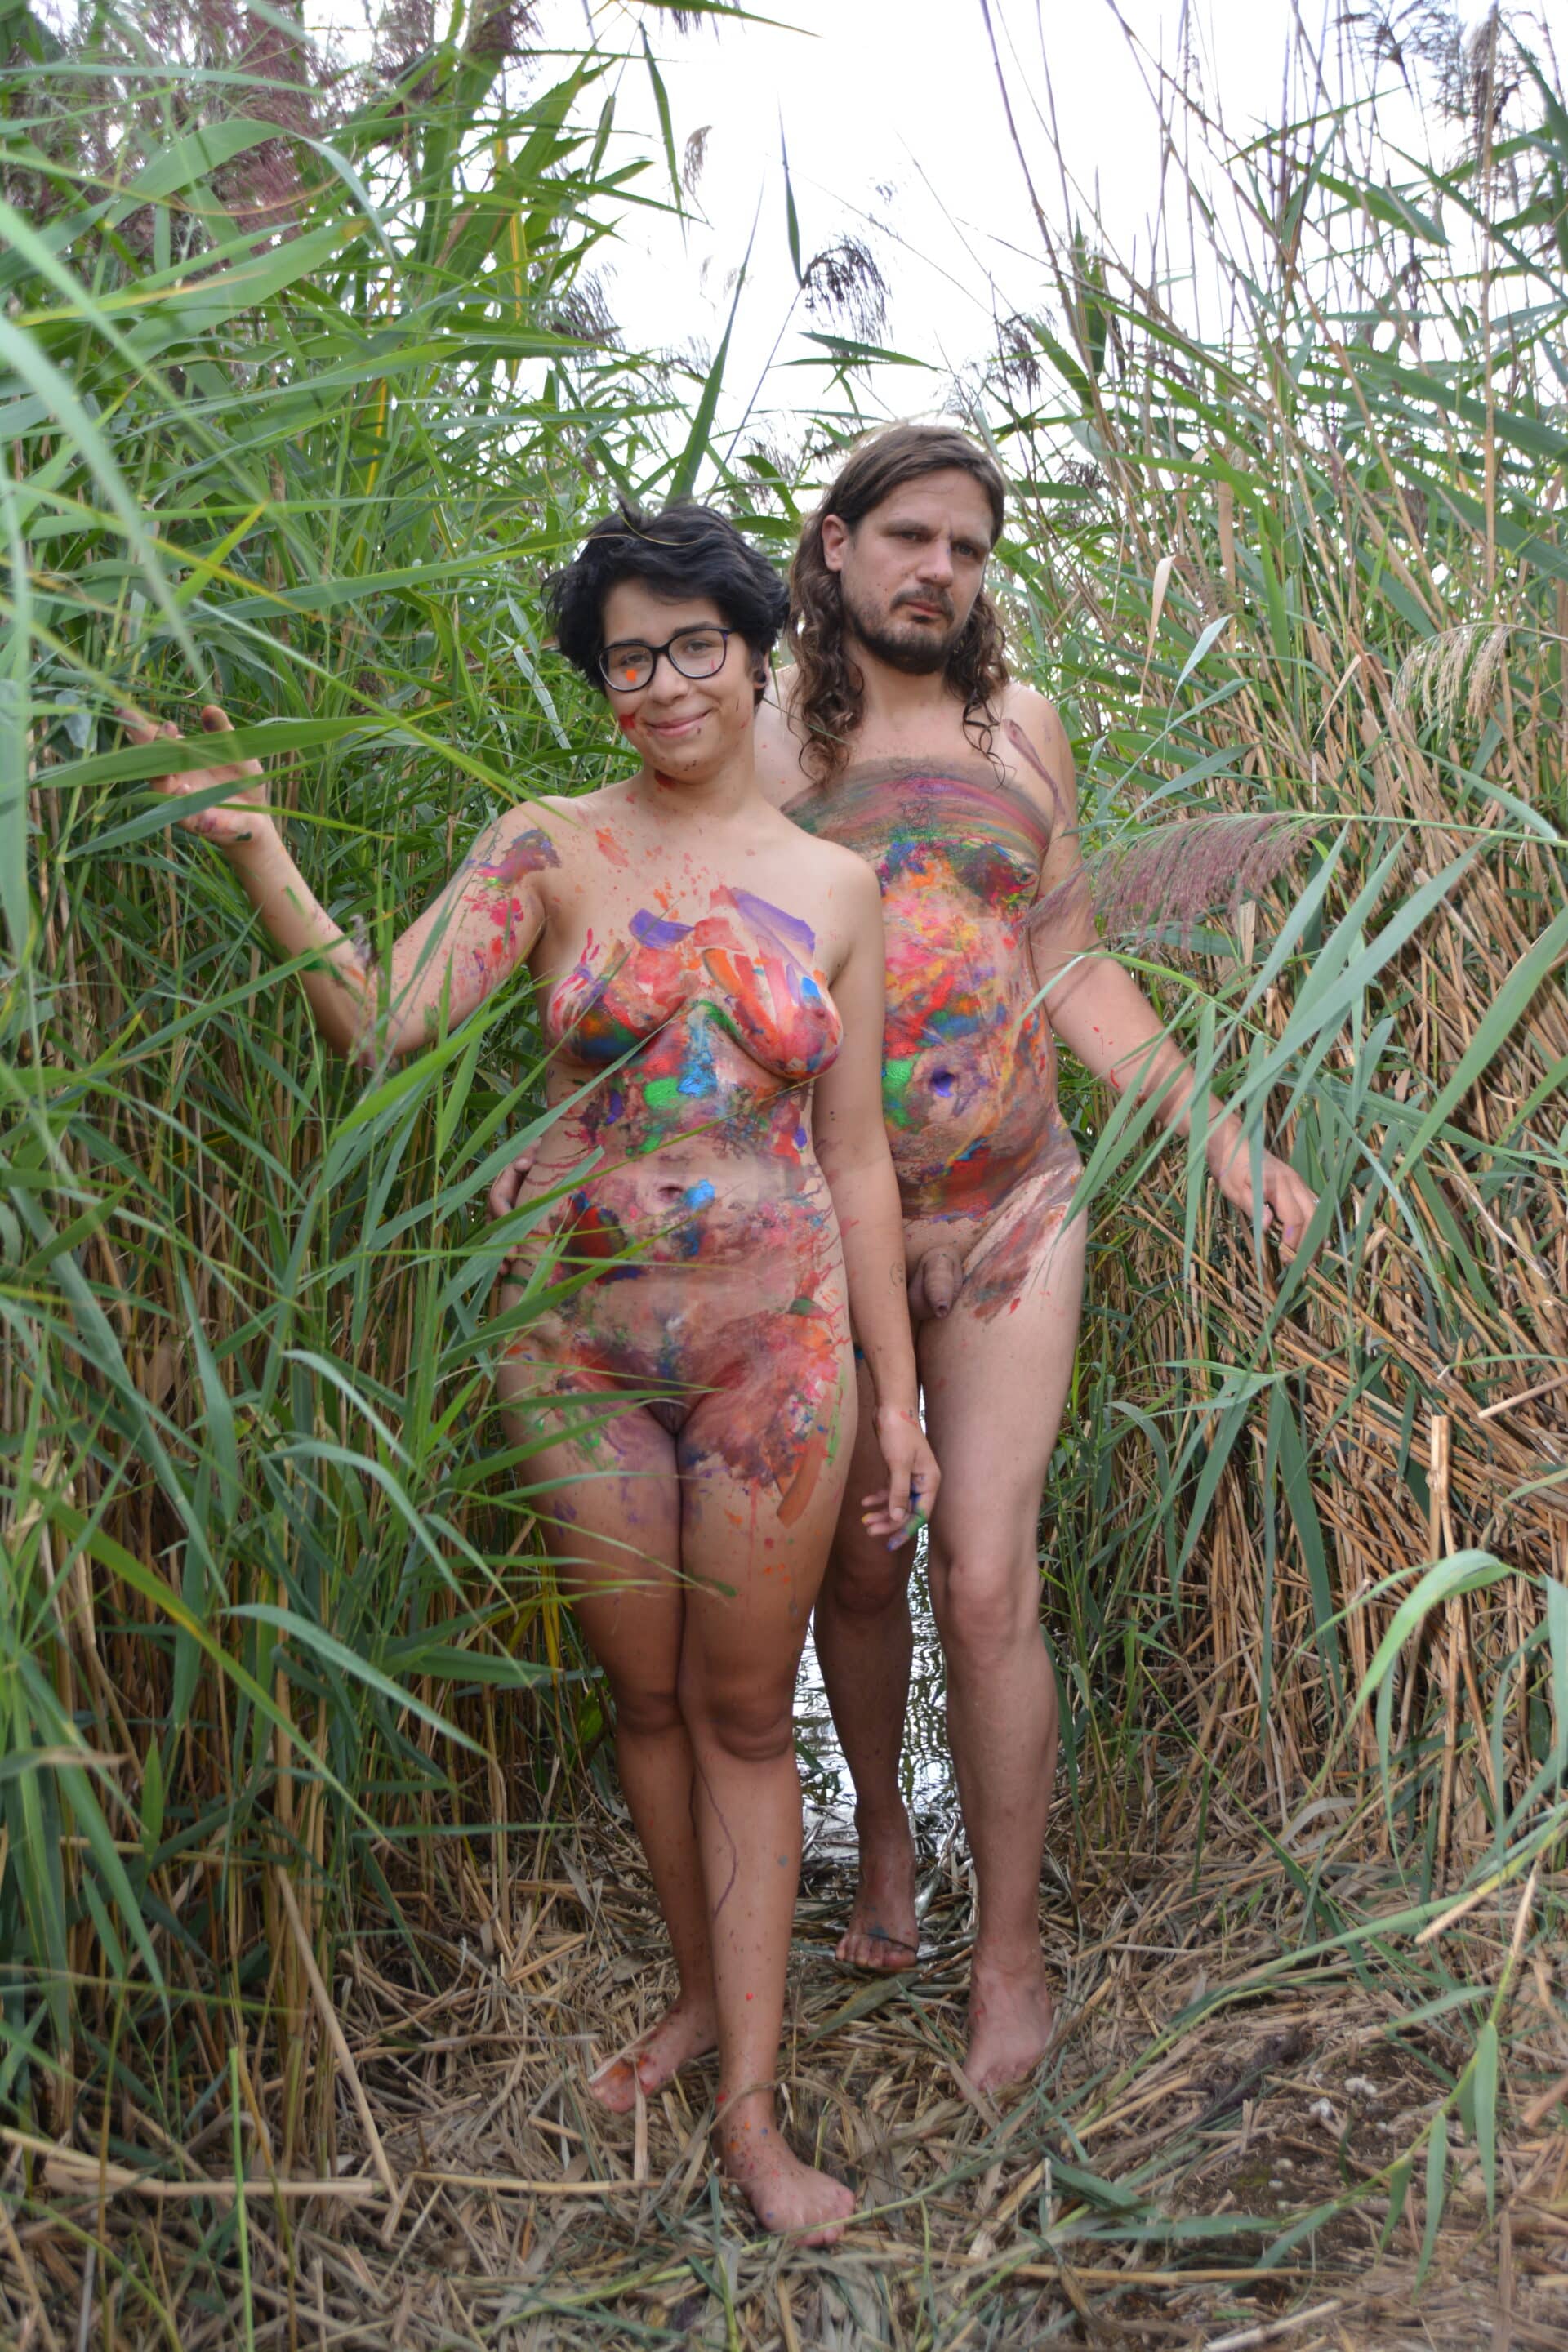 Freikörperkultur - Lea und Michael nackt und bemalt im hohen Gras